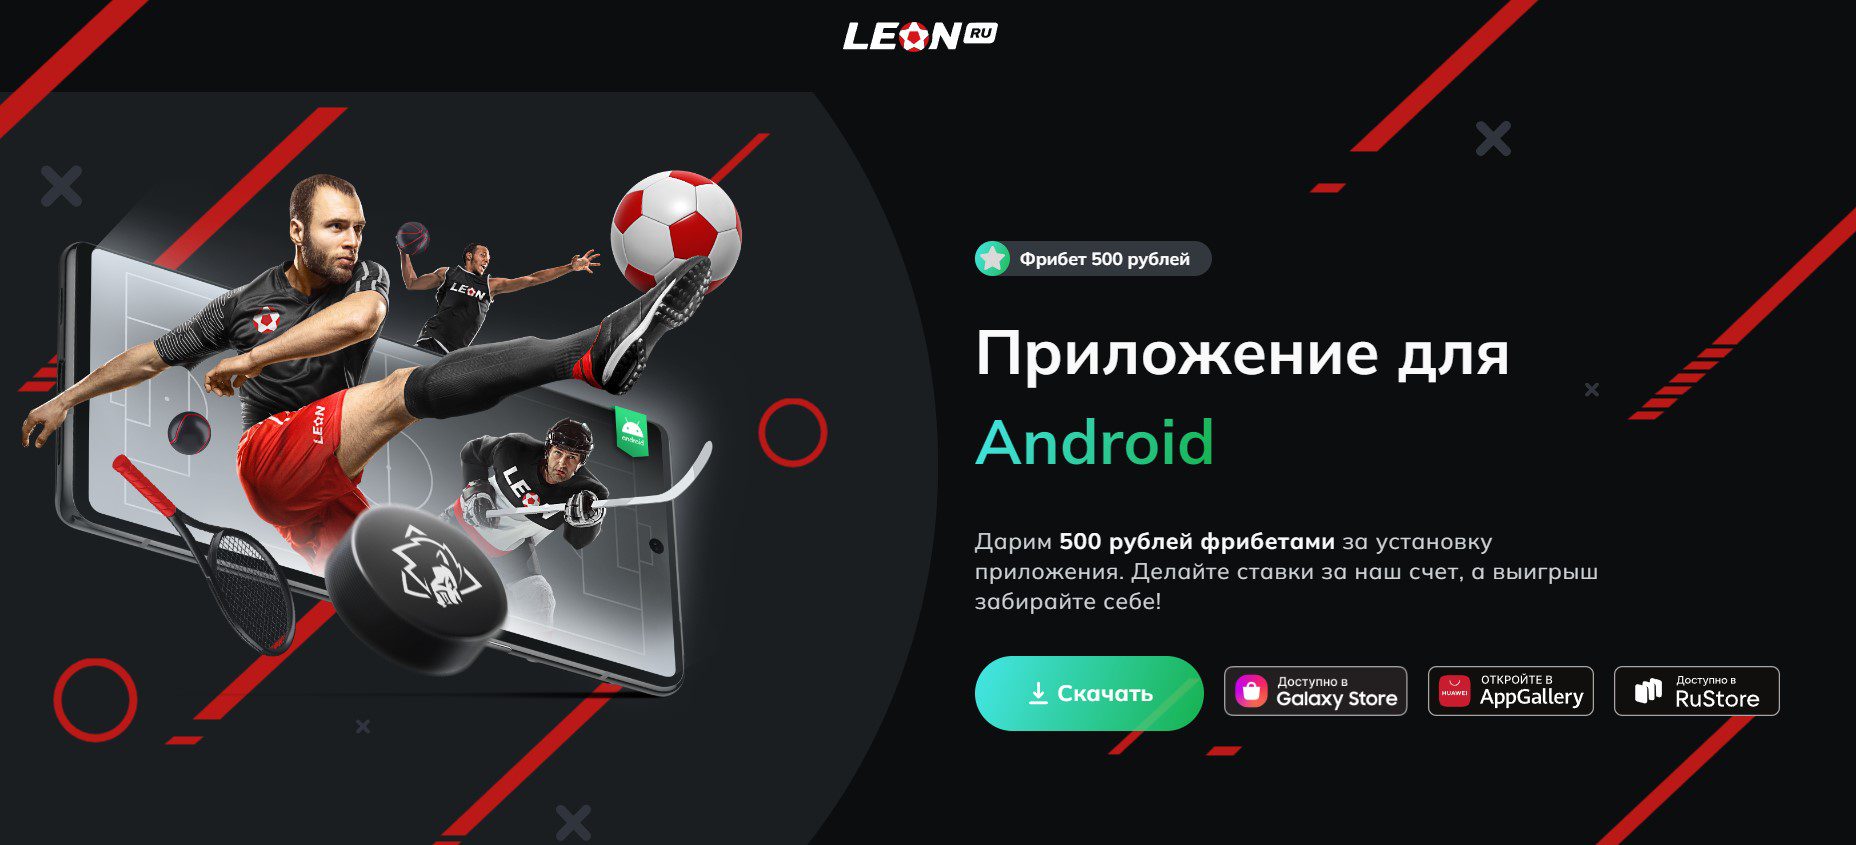 mobile version of LEON BC